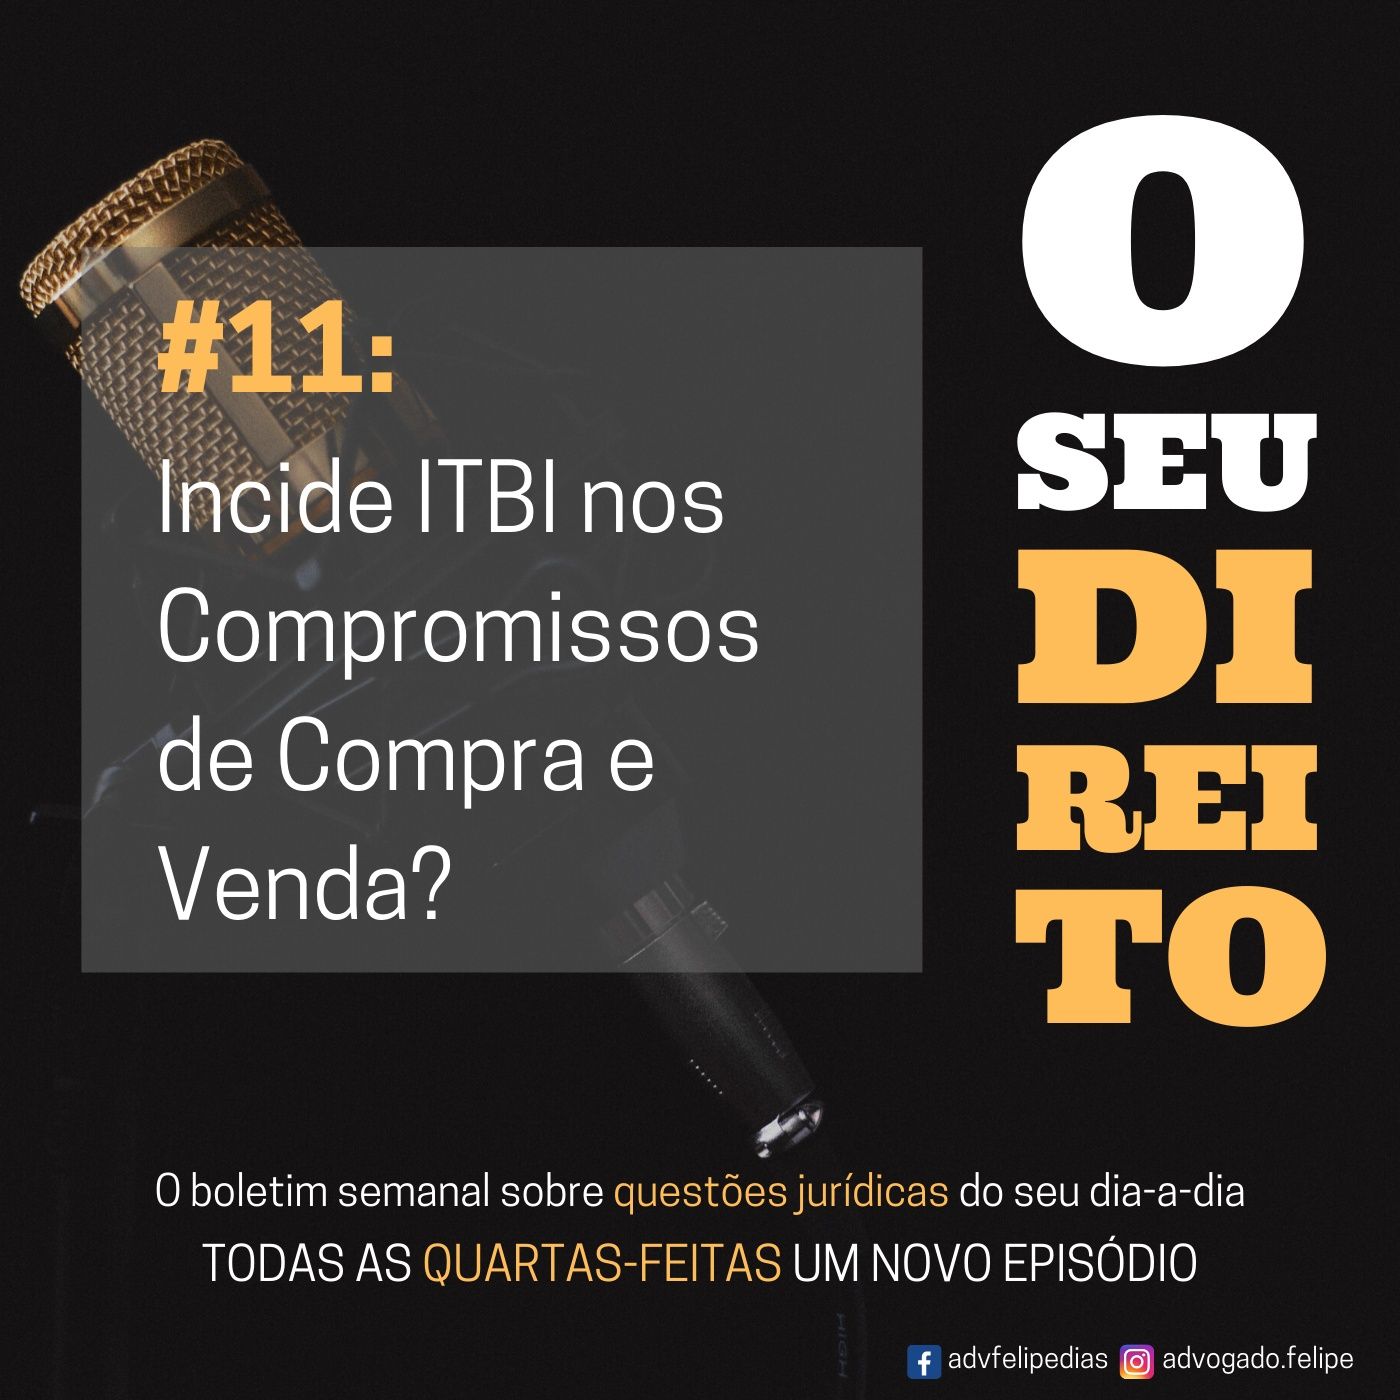 #11 - Incide ITBI nos Compromissos de Compra e Venda?